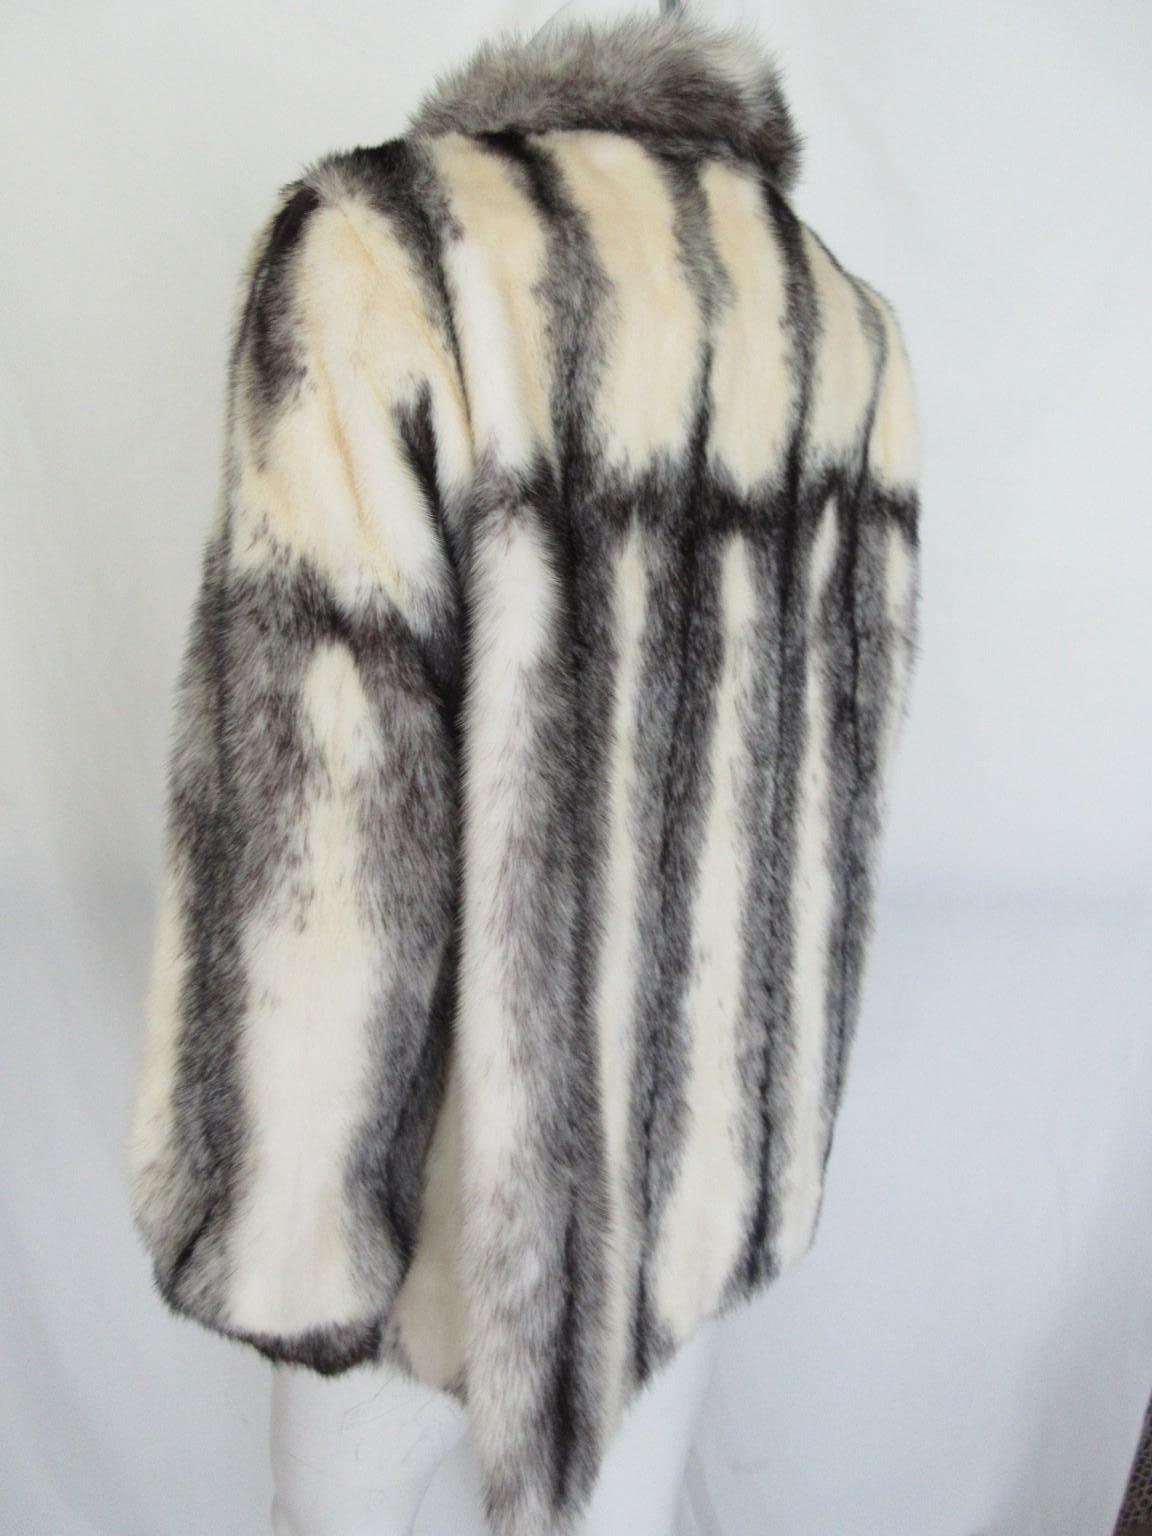 Exclusive Kohinoor Cross Mink Fur Coat In Fair Condition For Sale In Amsterdam, NL